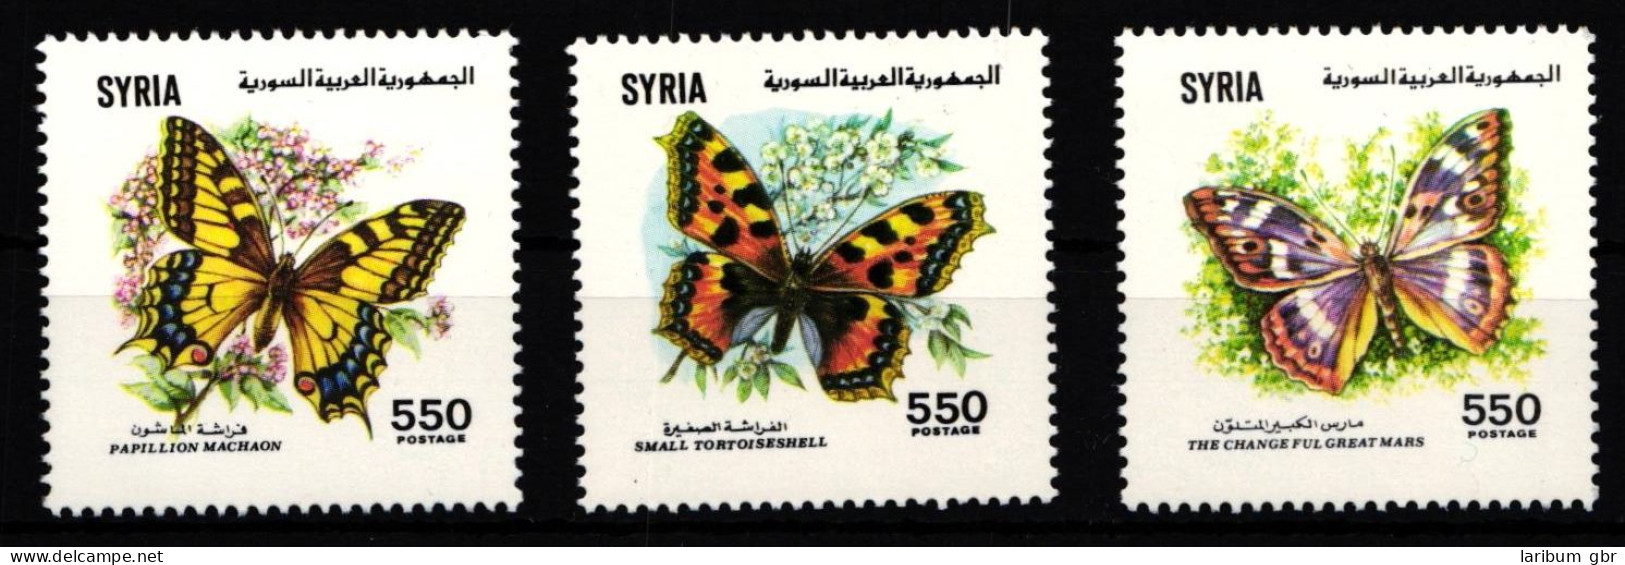 Syrien 1821-1823 Postfrisch Schmetterling #IH068 - Syrien